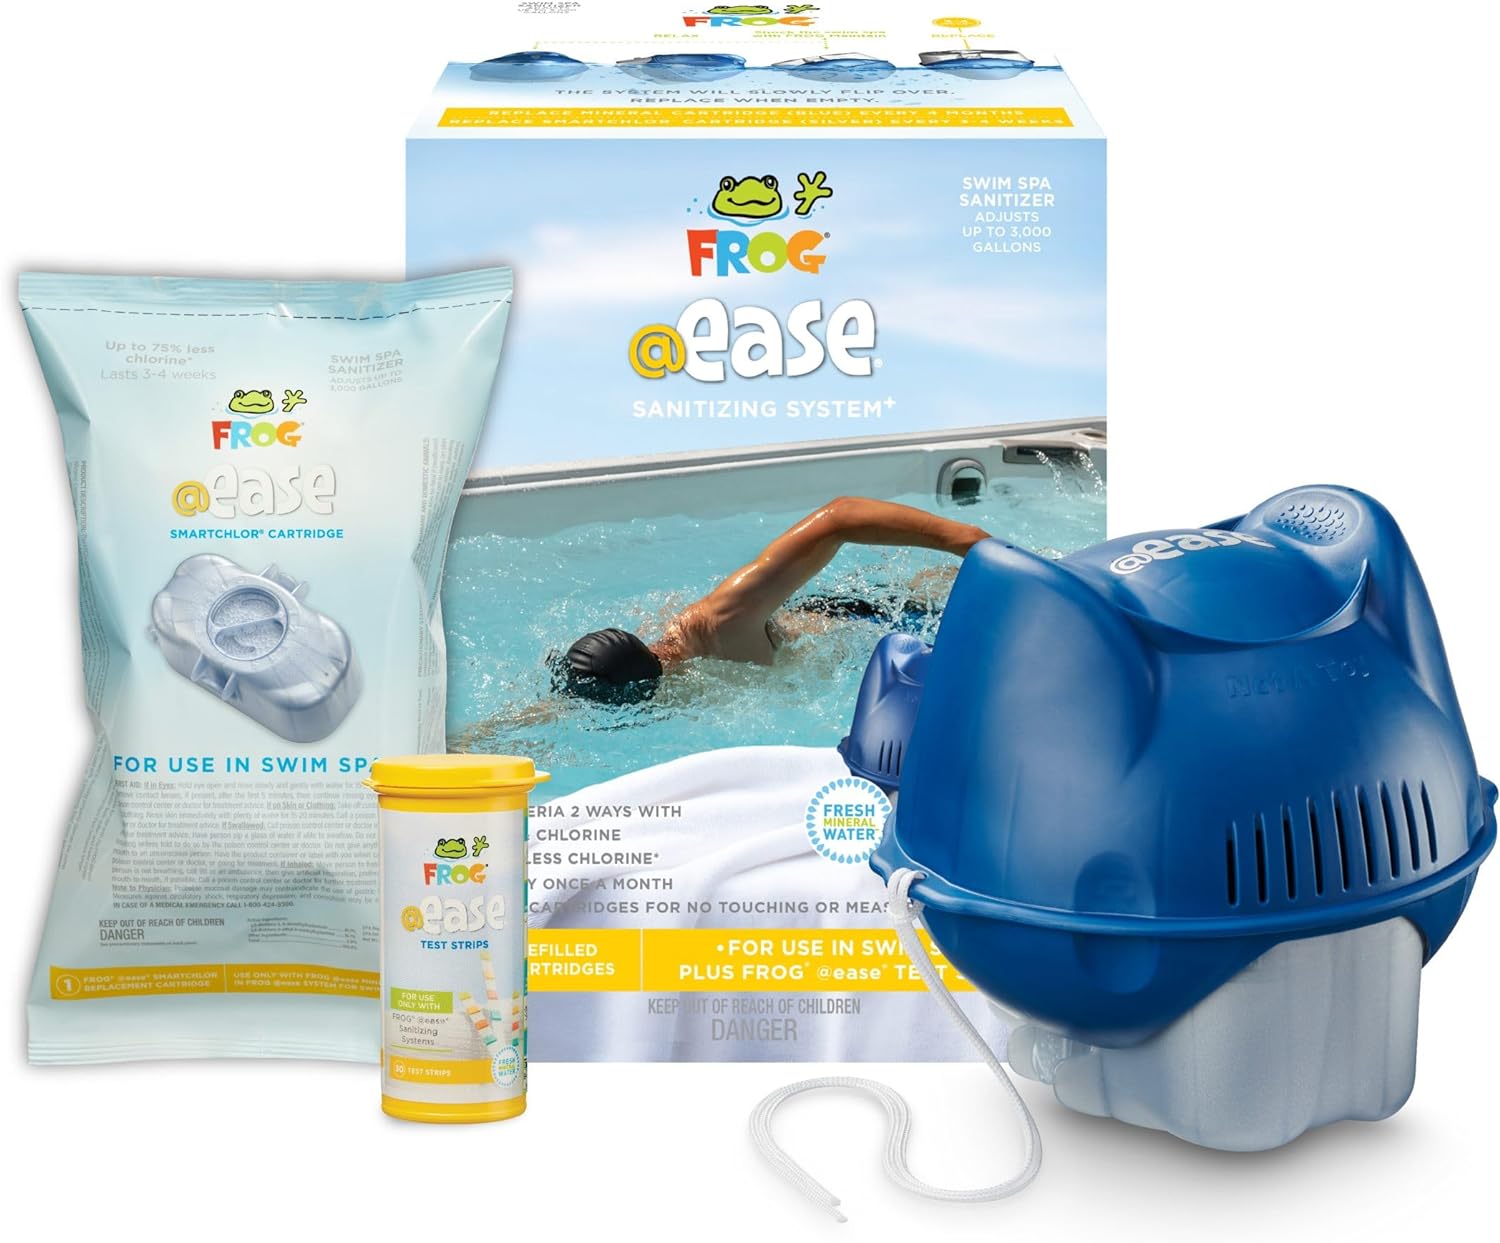 FROG @Ease Sanitizing System for Swim Spas